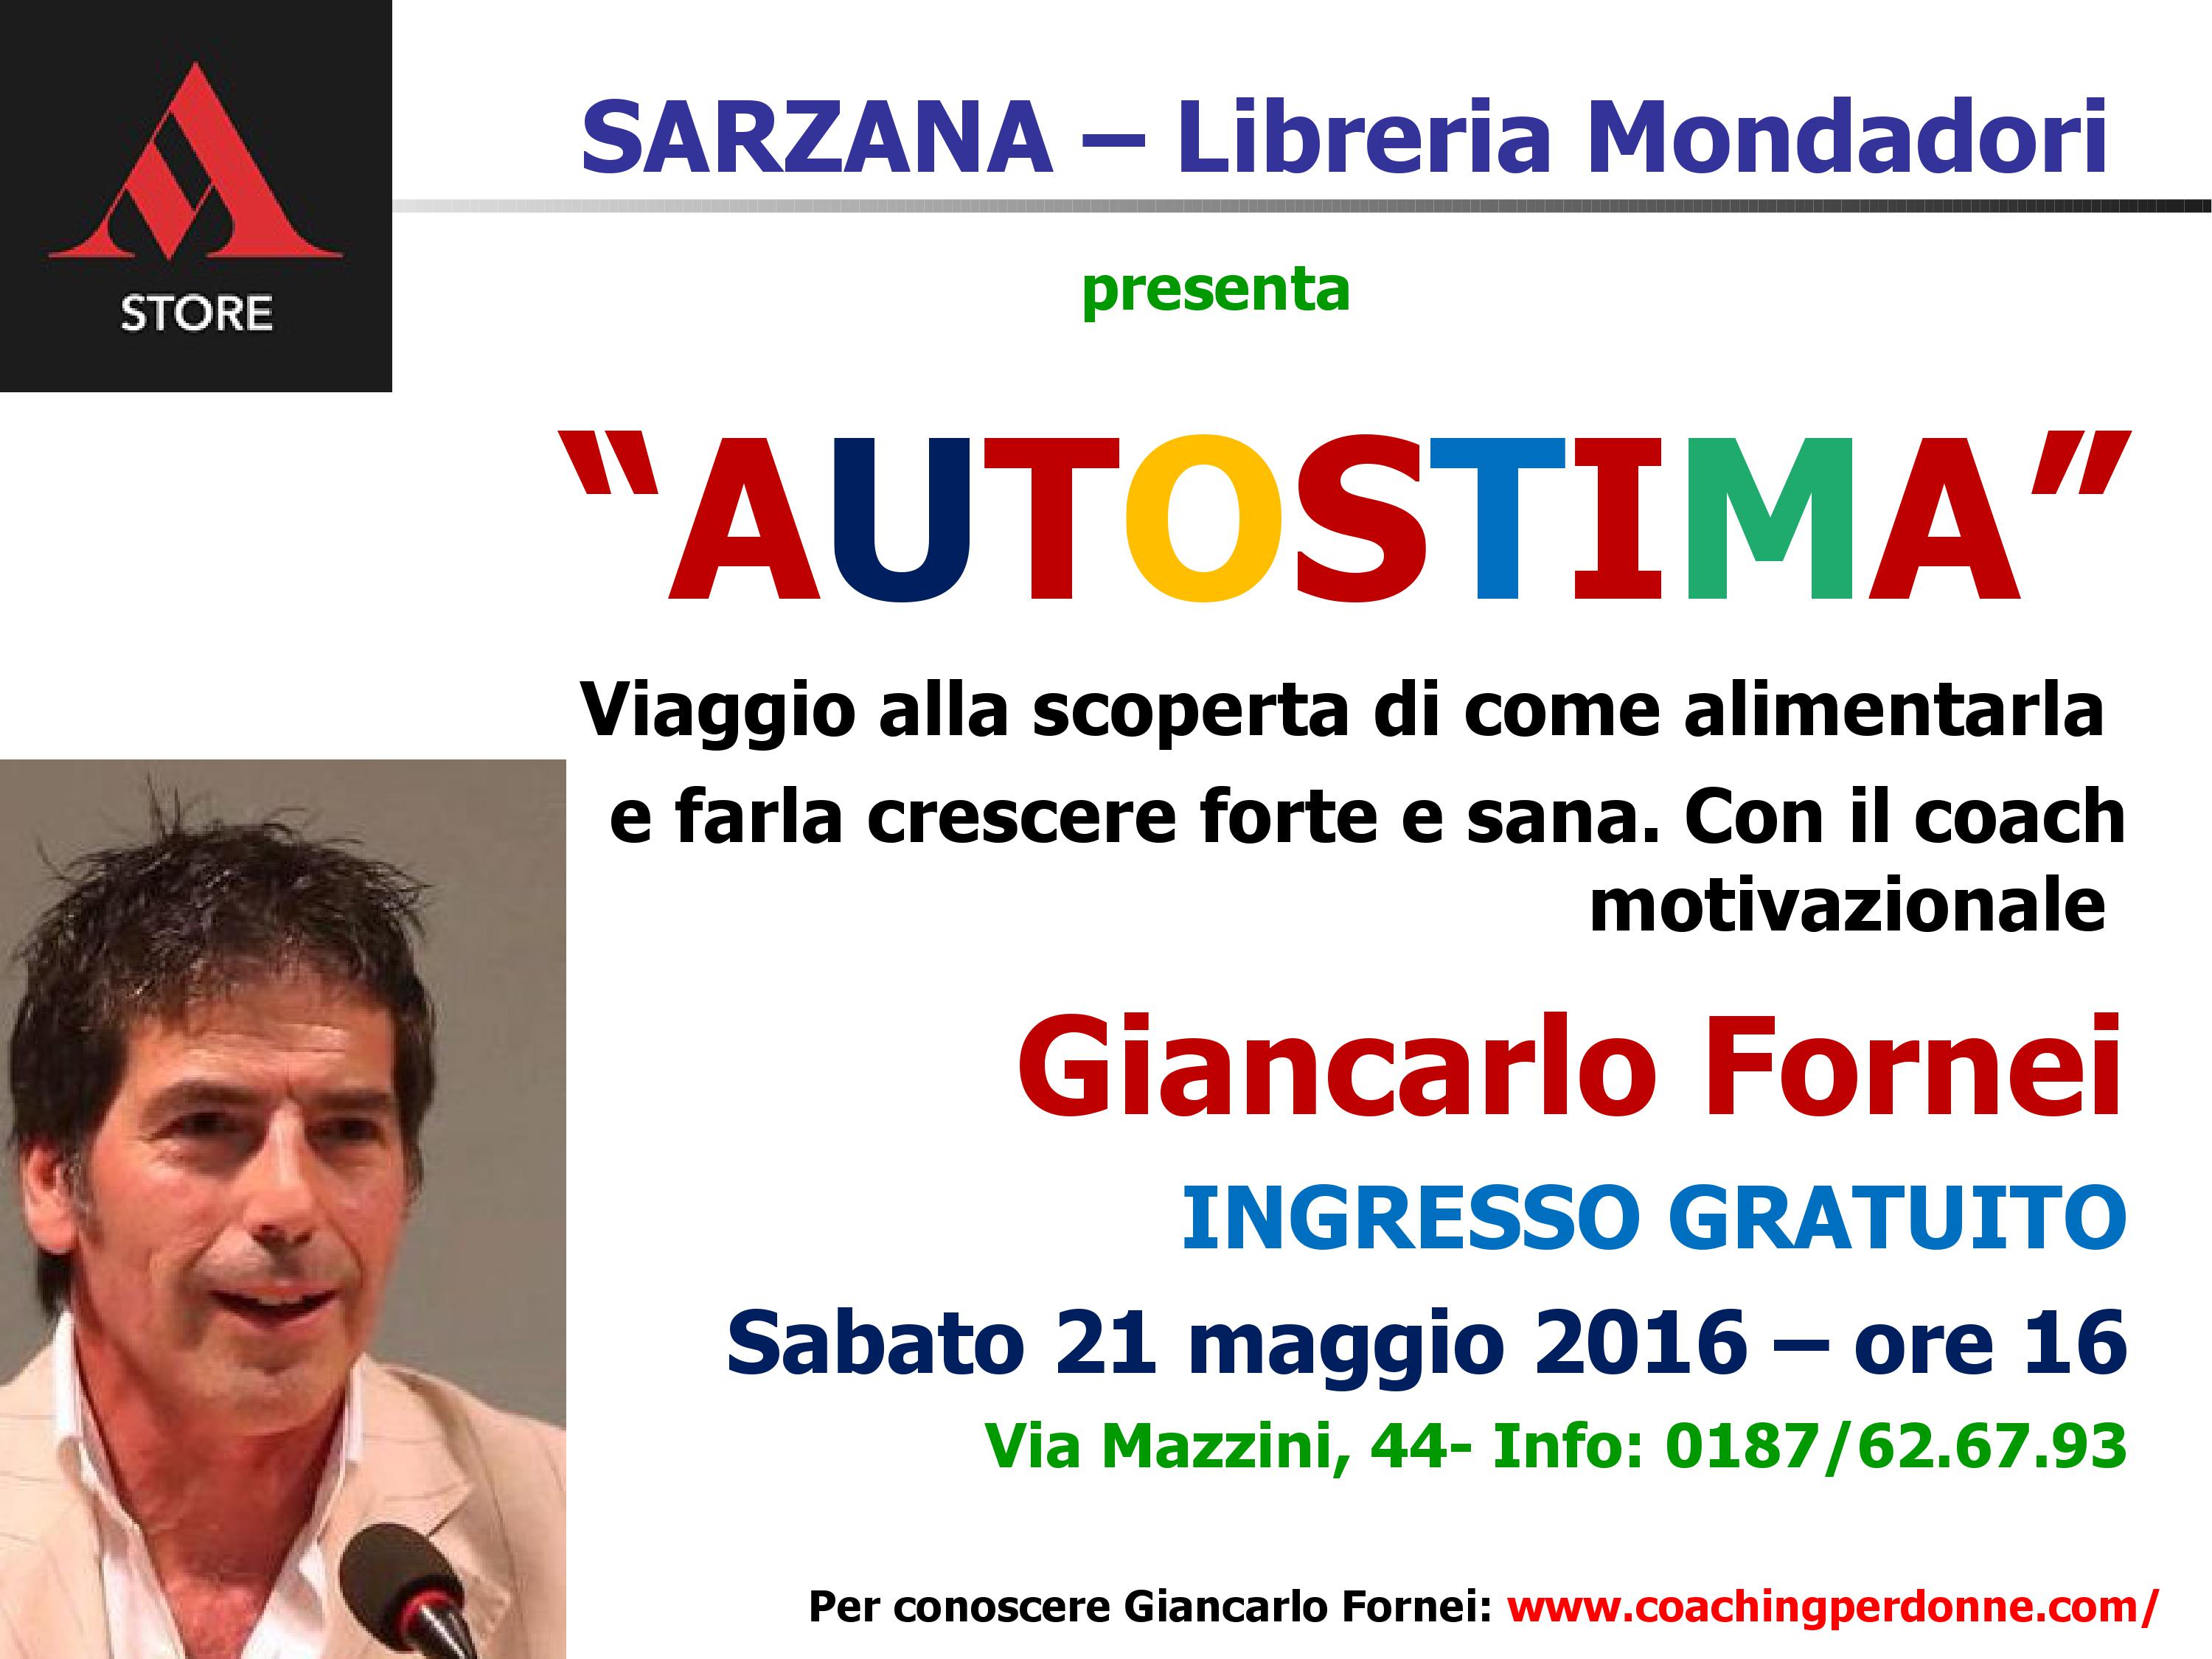 Sarzana - Libreria Mondadori, sabato 21 maggio 2016 - conferenza autostima coach motivazionale Giancarlo Fornei